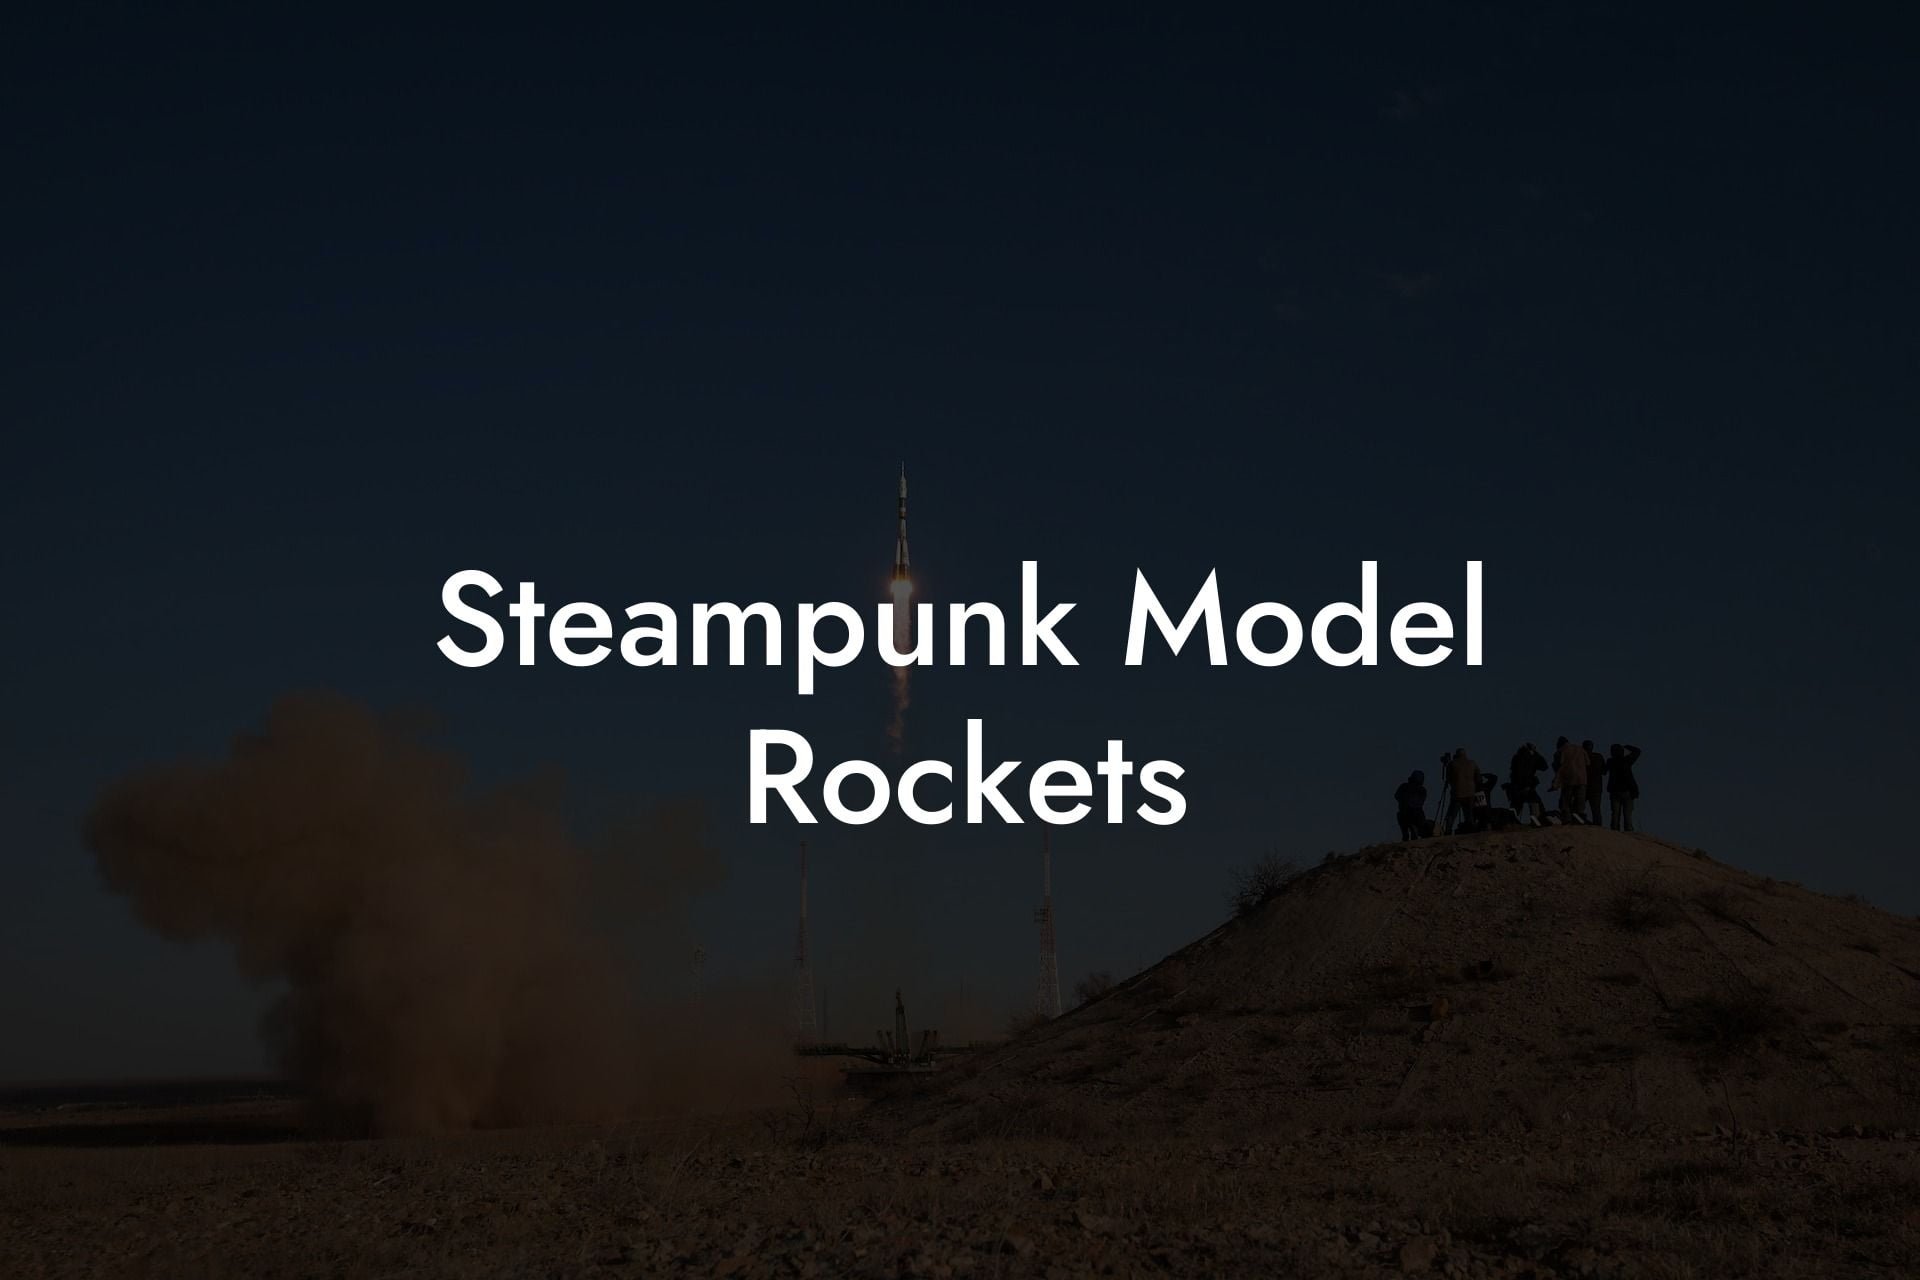 Steampunk Model Rockets